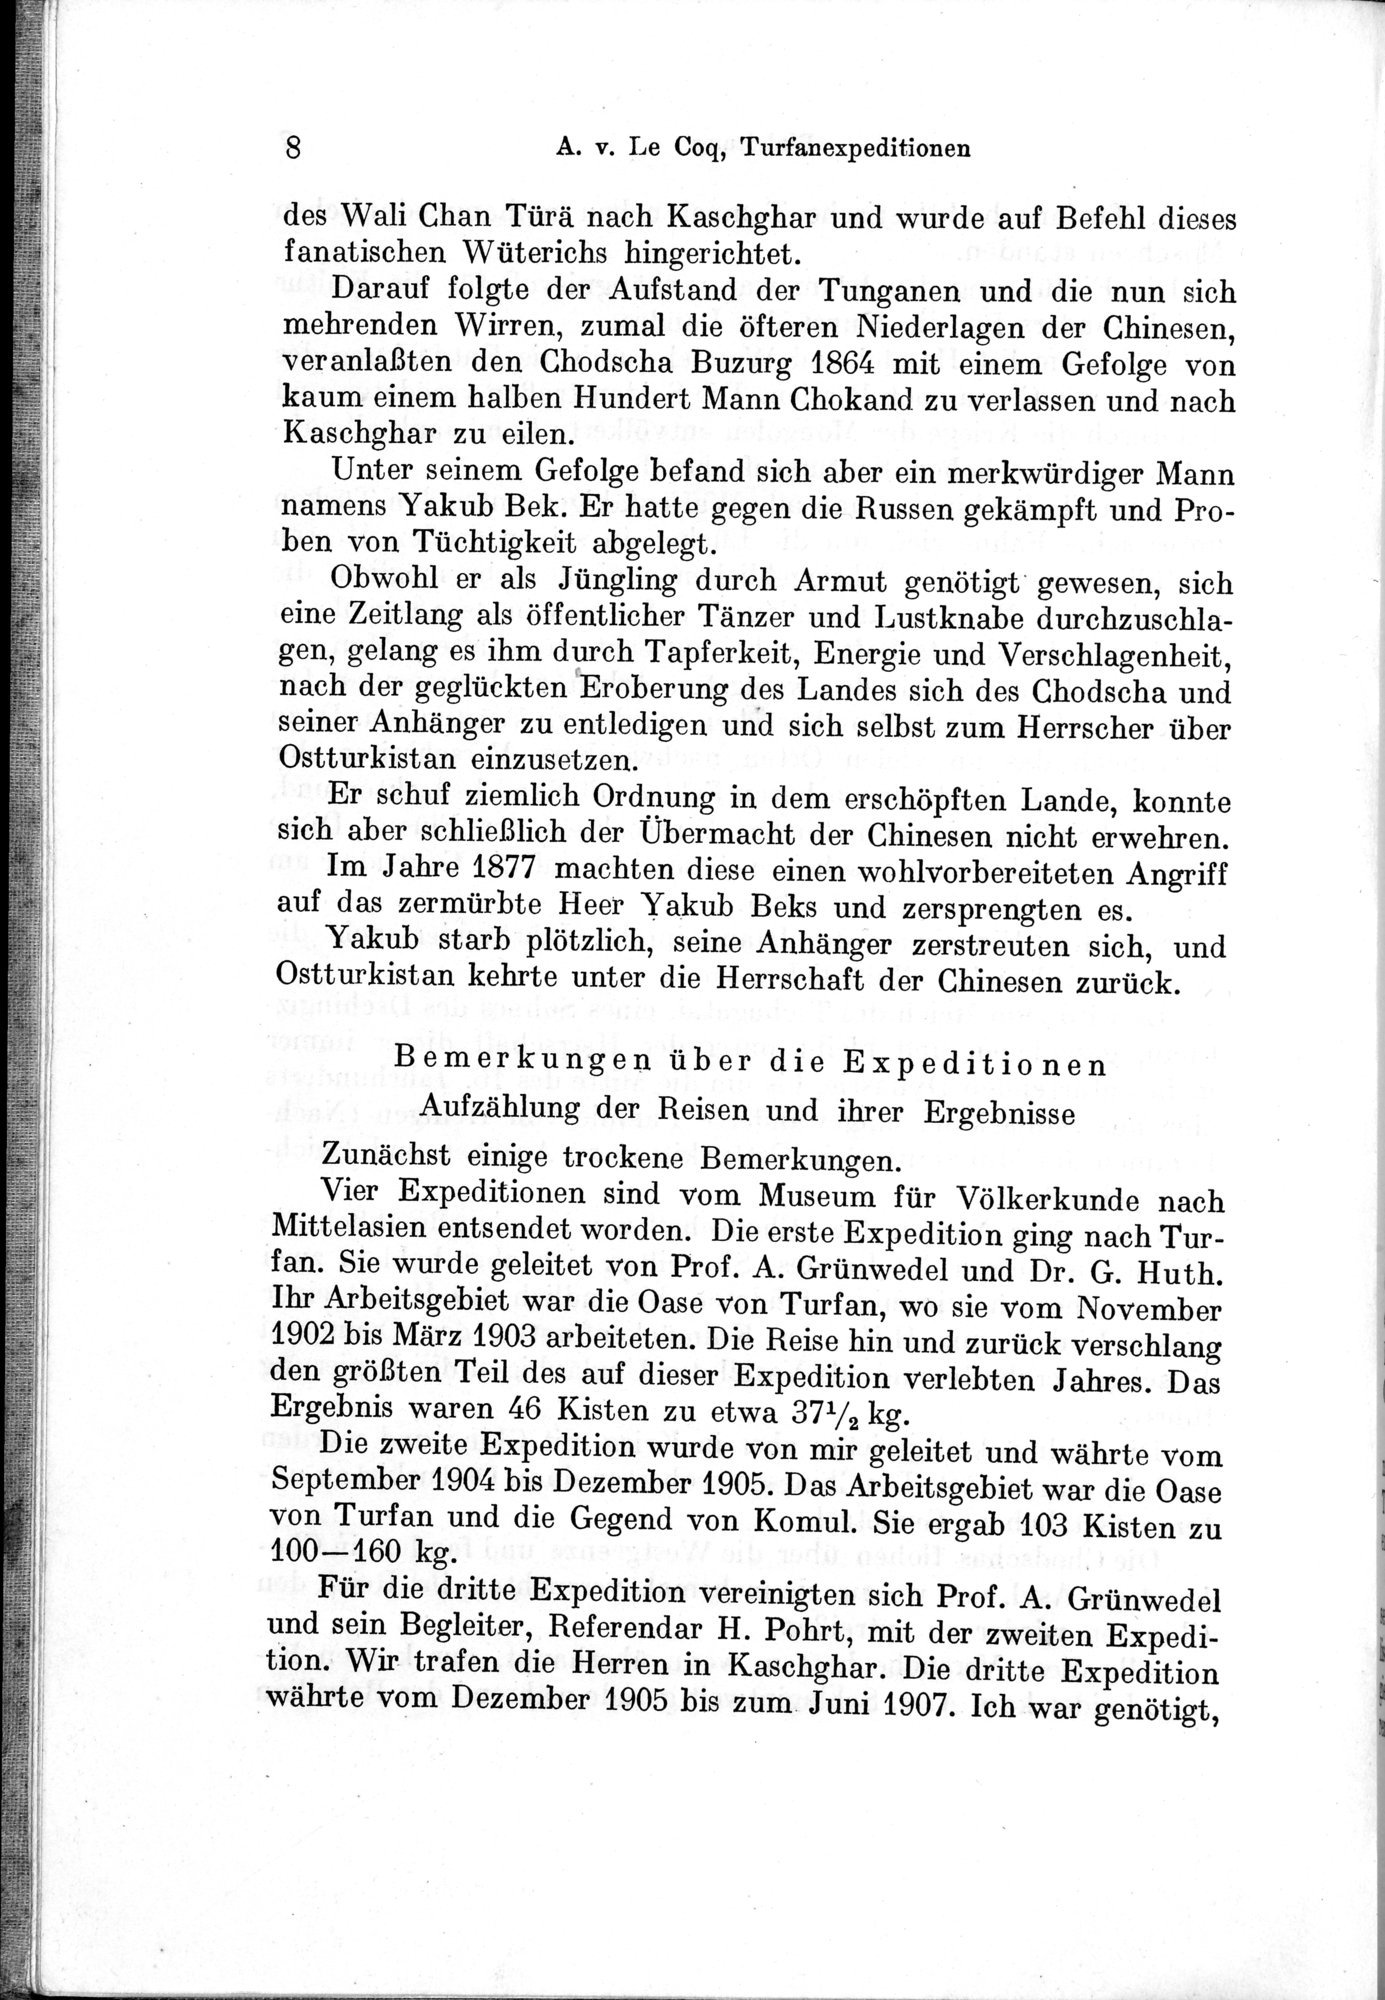 Auf Hellas Spuren in Ostturkistan : vol.1 / Page 24 (Grayscale High Resolution Image)